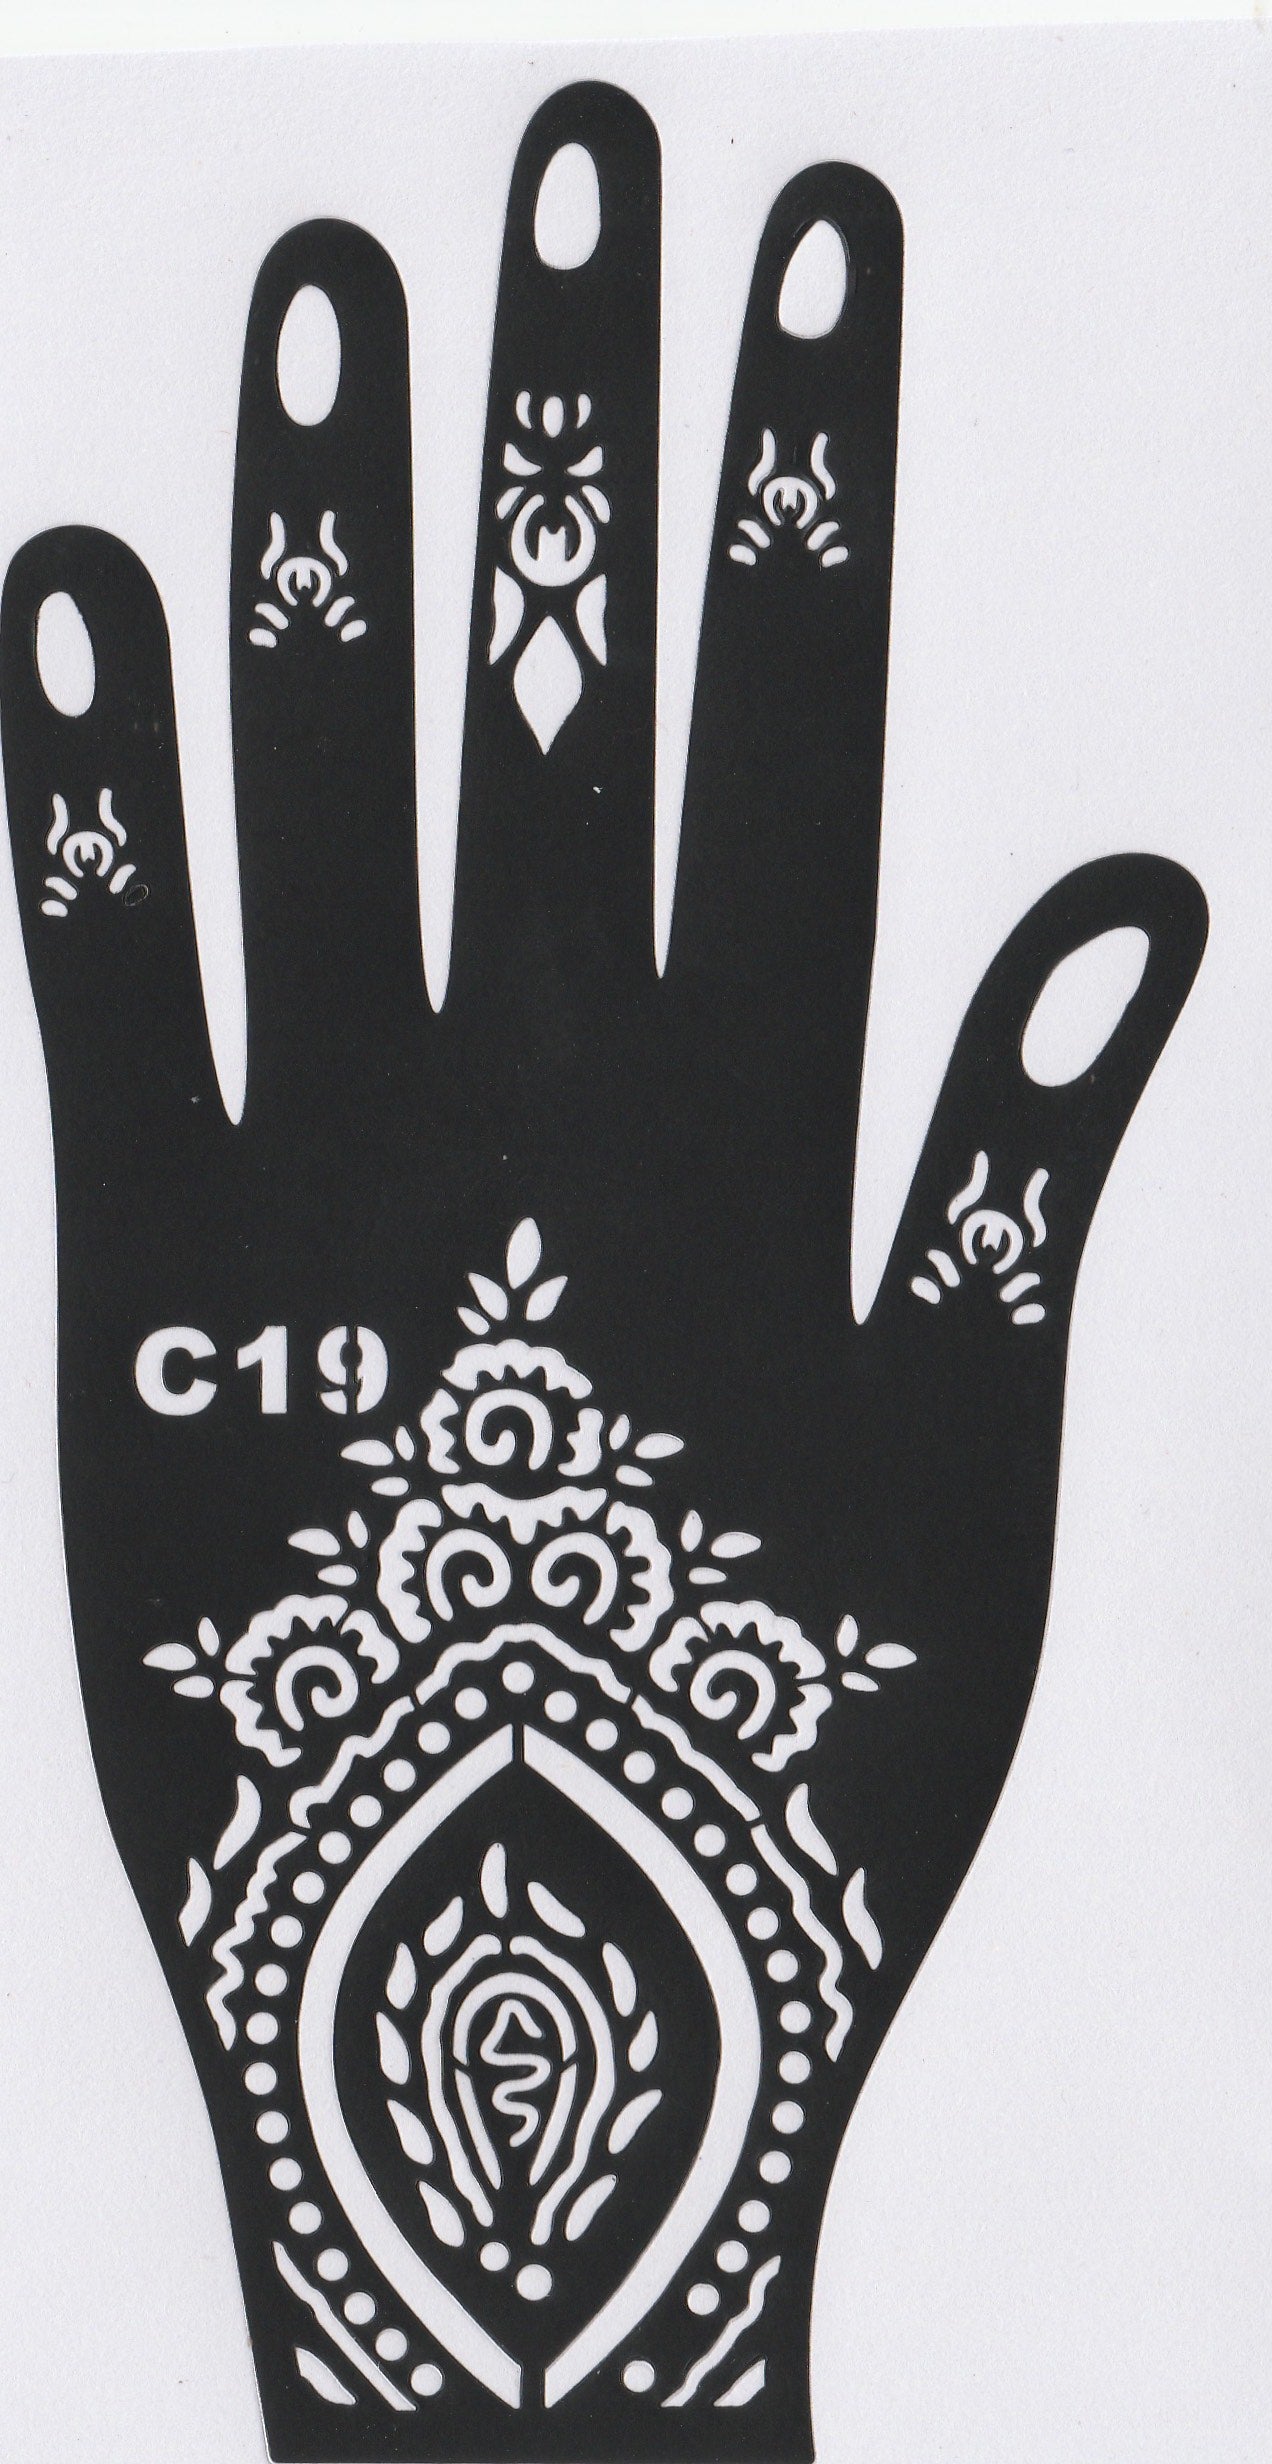 Beautiful Henna Stencils - Both Hands/ Mehendi Designs/ Mehendi DIY Stencil - C19